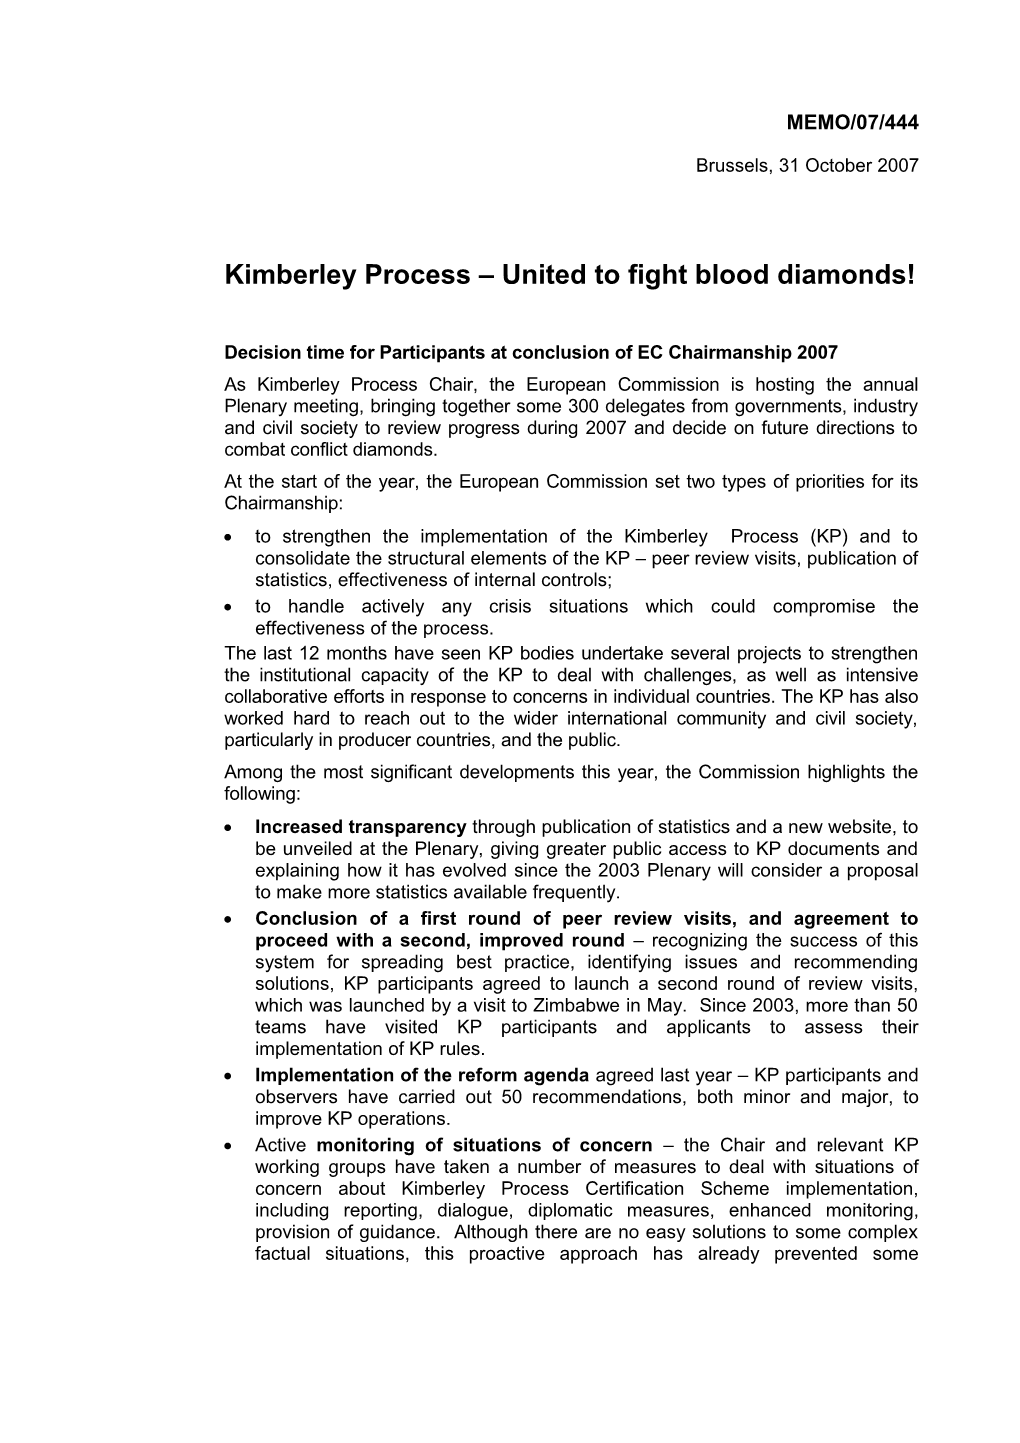 Kimberley Process United to Fight Blood Diamonds!